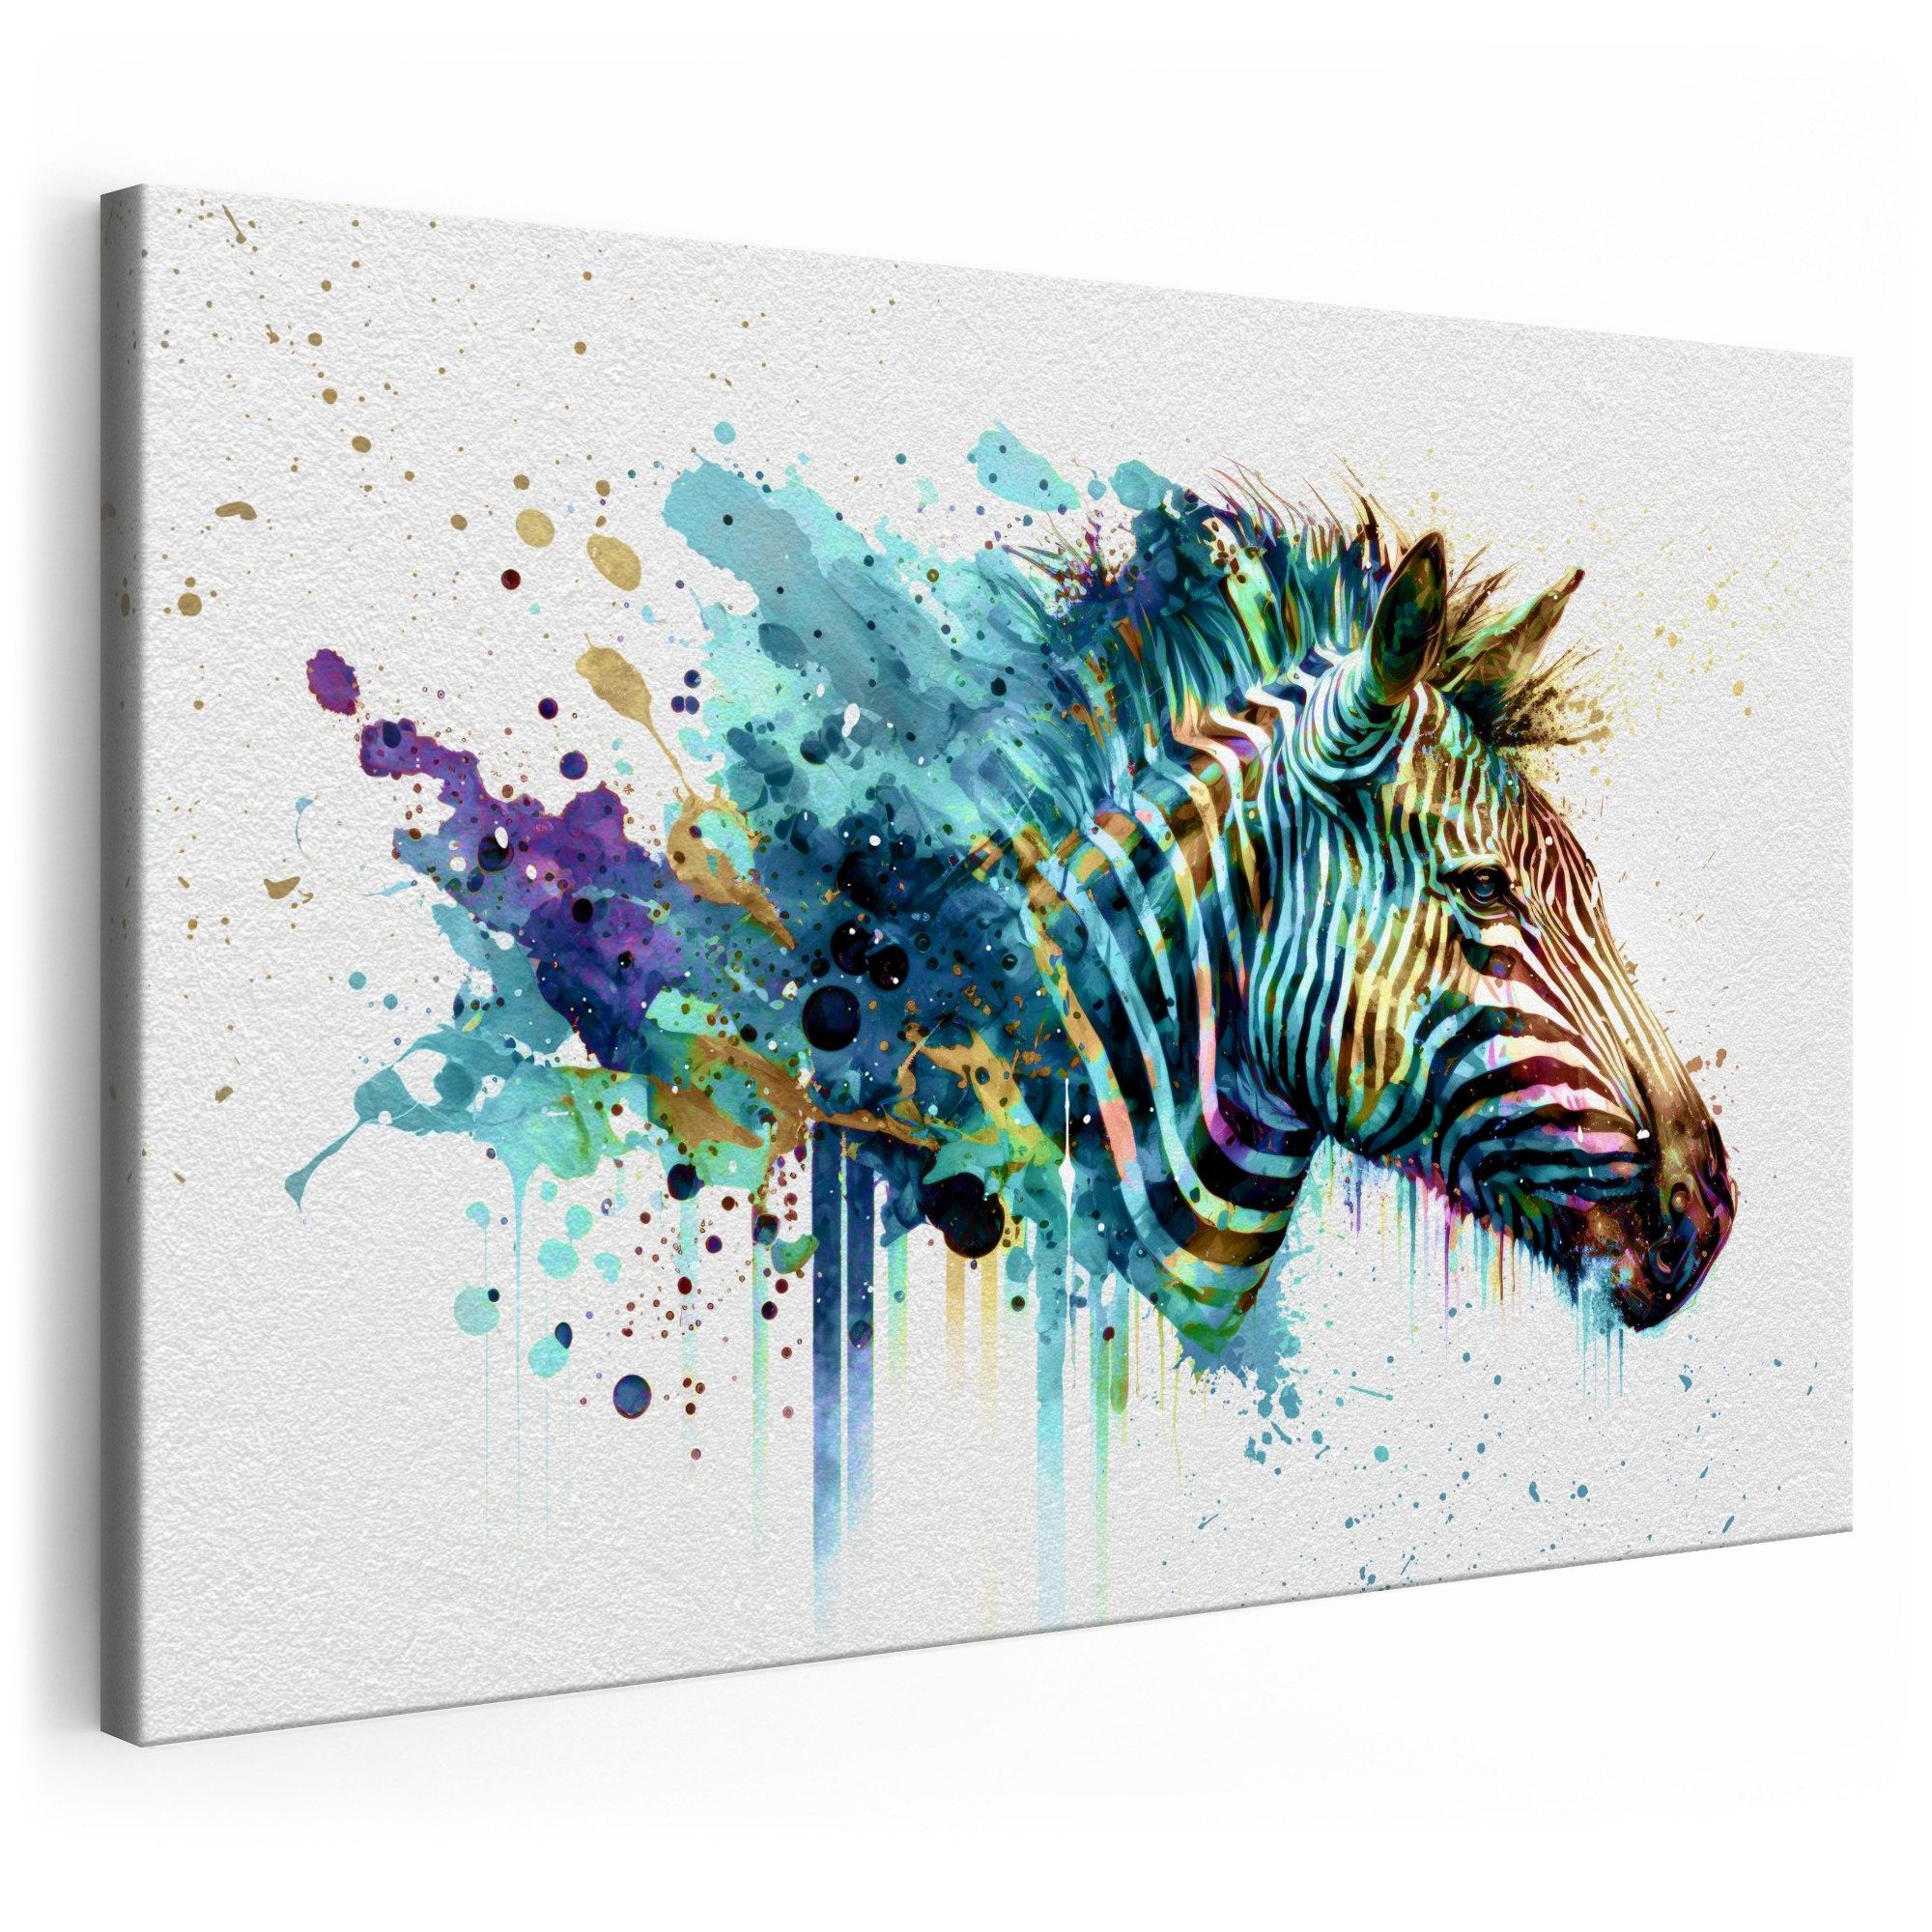 Artmazing Leinwandbild Zebra im Farbsturm, XXL Leinwand 120x80, Poster & Kunstdrucke, Zebra im Farbsturm